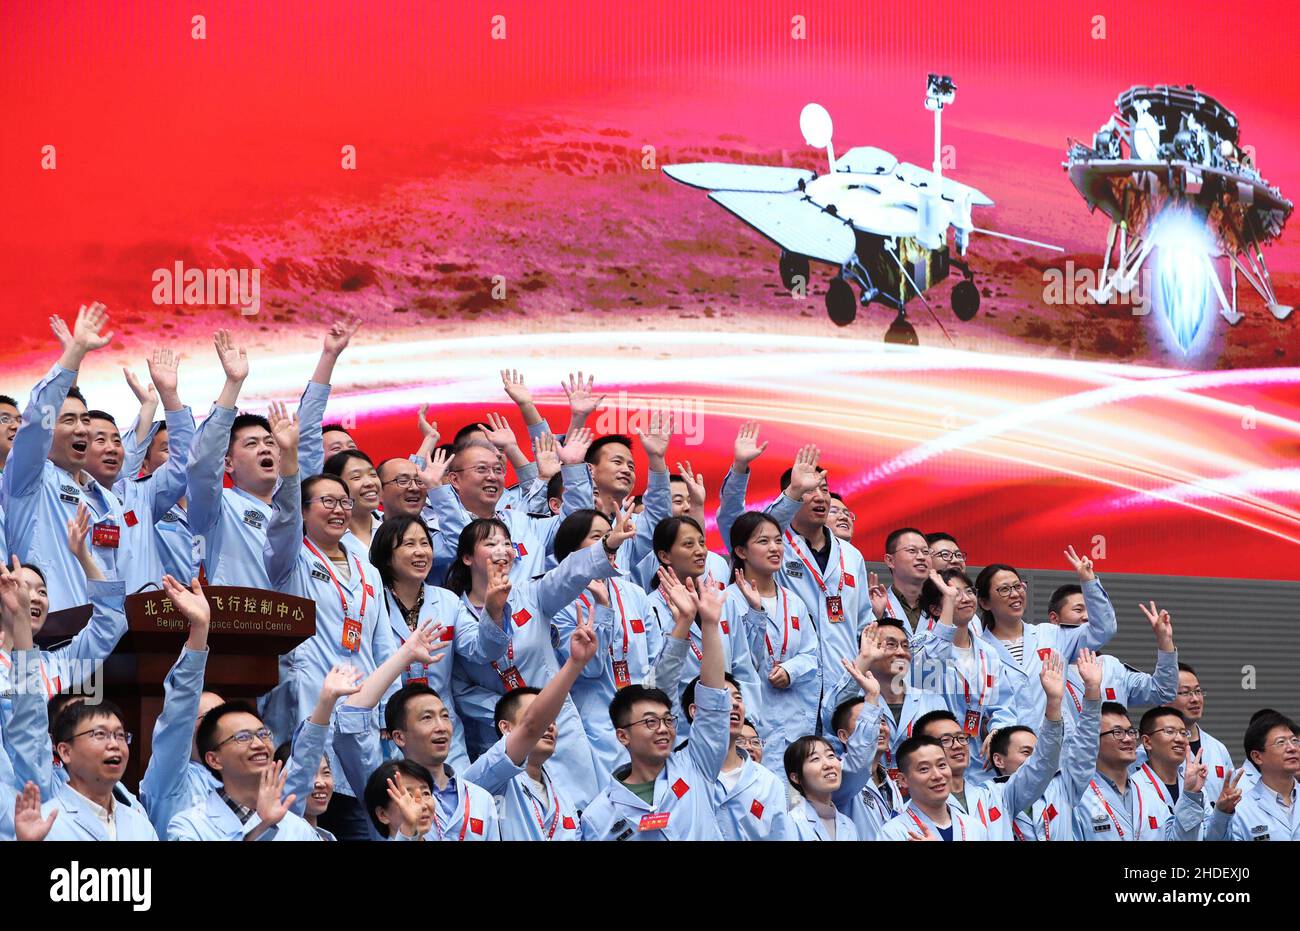 Peking, China. 15th. Mai 2021. Technische Mitarbeiter feiern, nachdem die chinesische Sonde Tianwen-1 erfolgreich auf dem Mars im Beijing Aerospace Control Center in Peking, der Hauptstadt Chinas, gelandet ist, 15. Mai 2021. Quelle: Jin Liwang/Xinhua/Alamy Live News Stockfoto